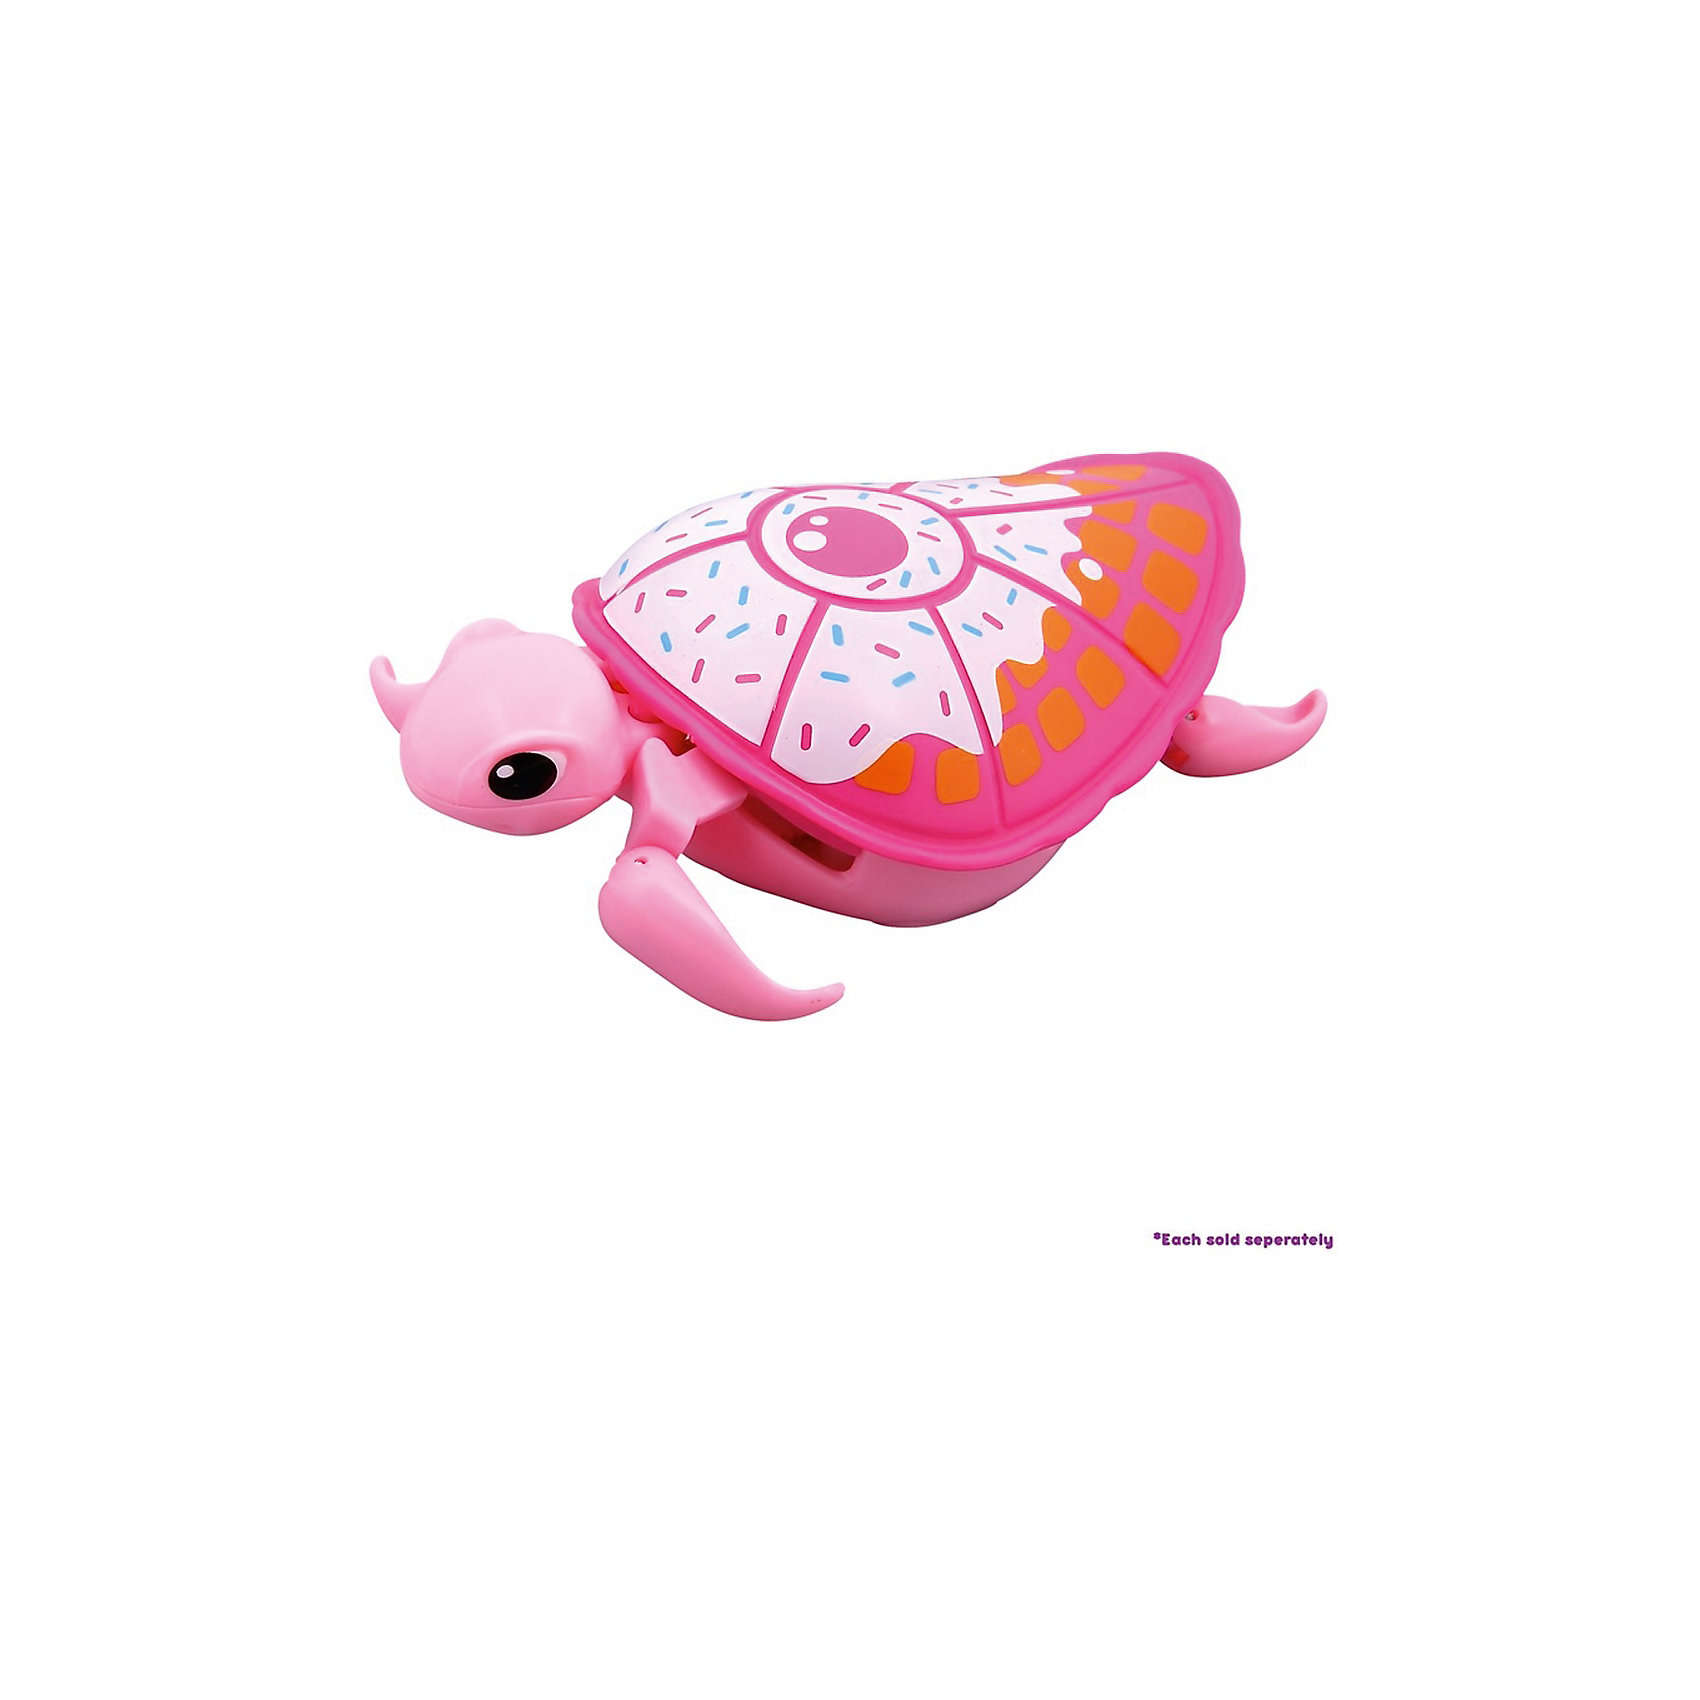 Интерактивная черепашка, розовая с белым панцирем, 3-я серия, Little Live Pets